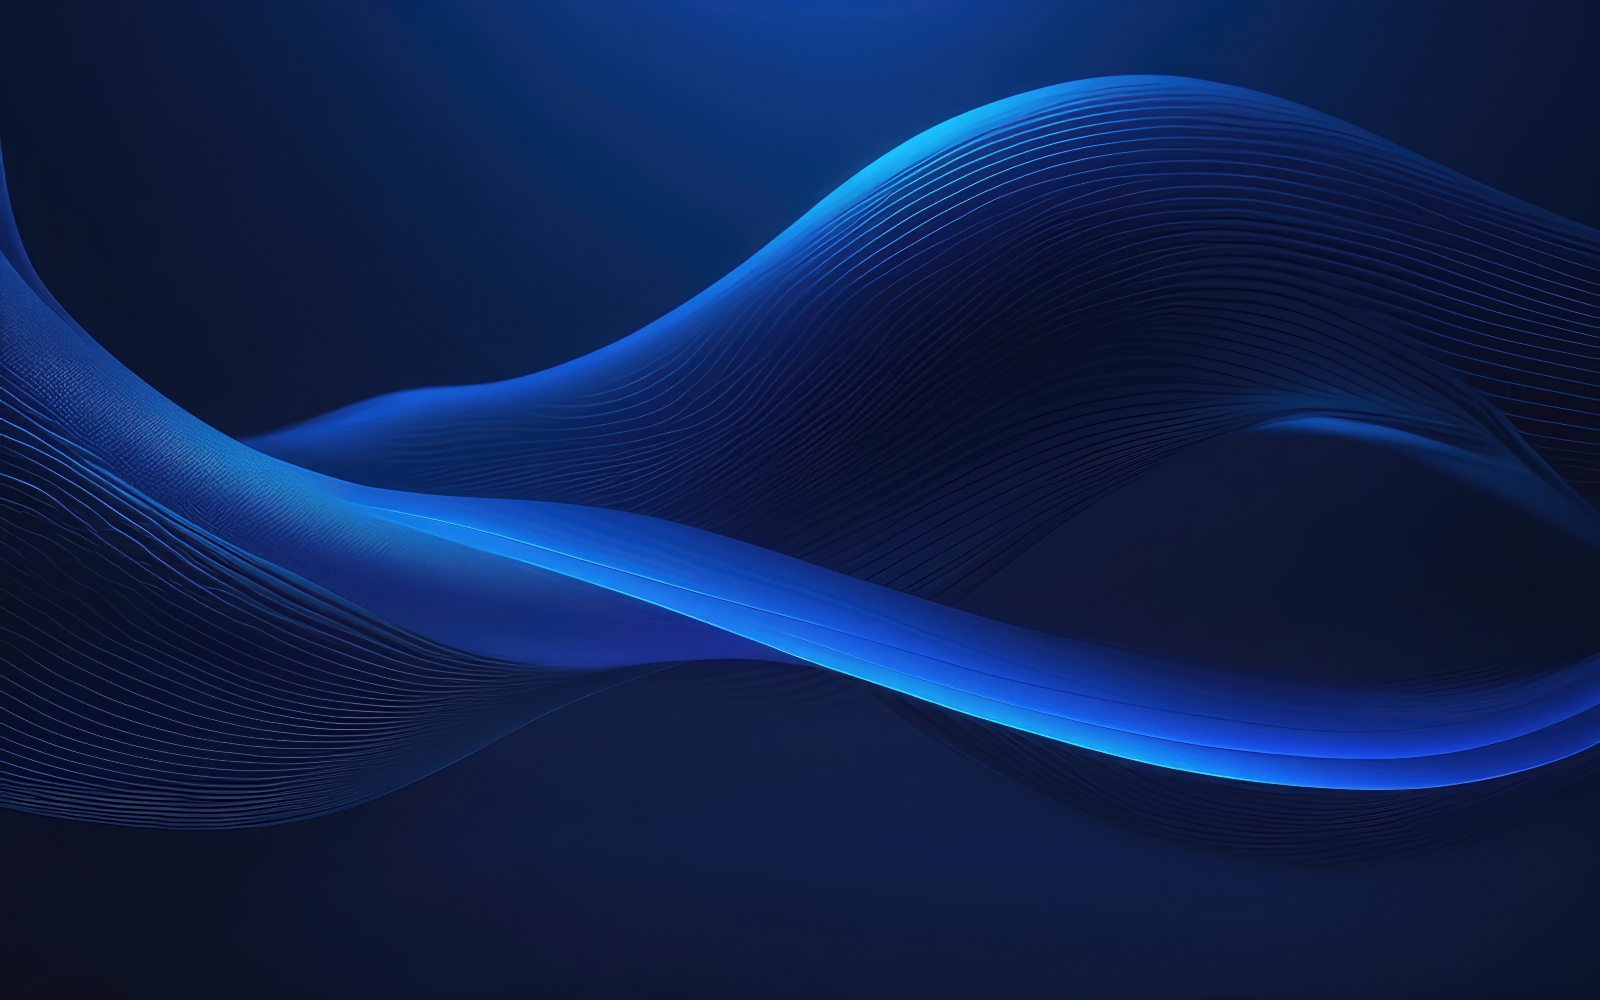 Premium Abstract Blur Wave Background design